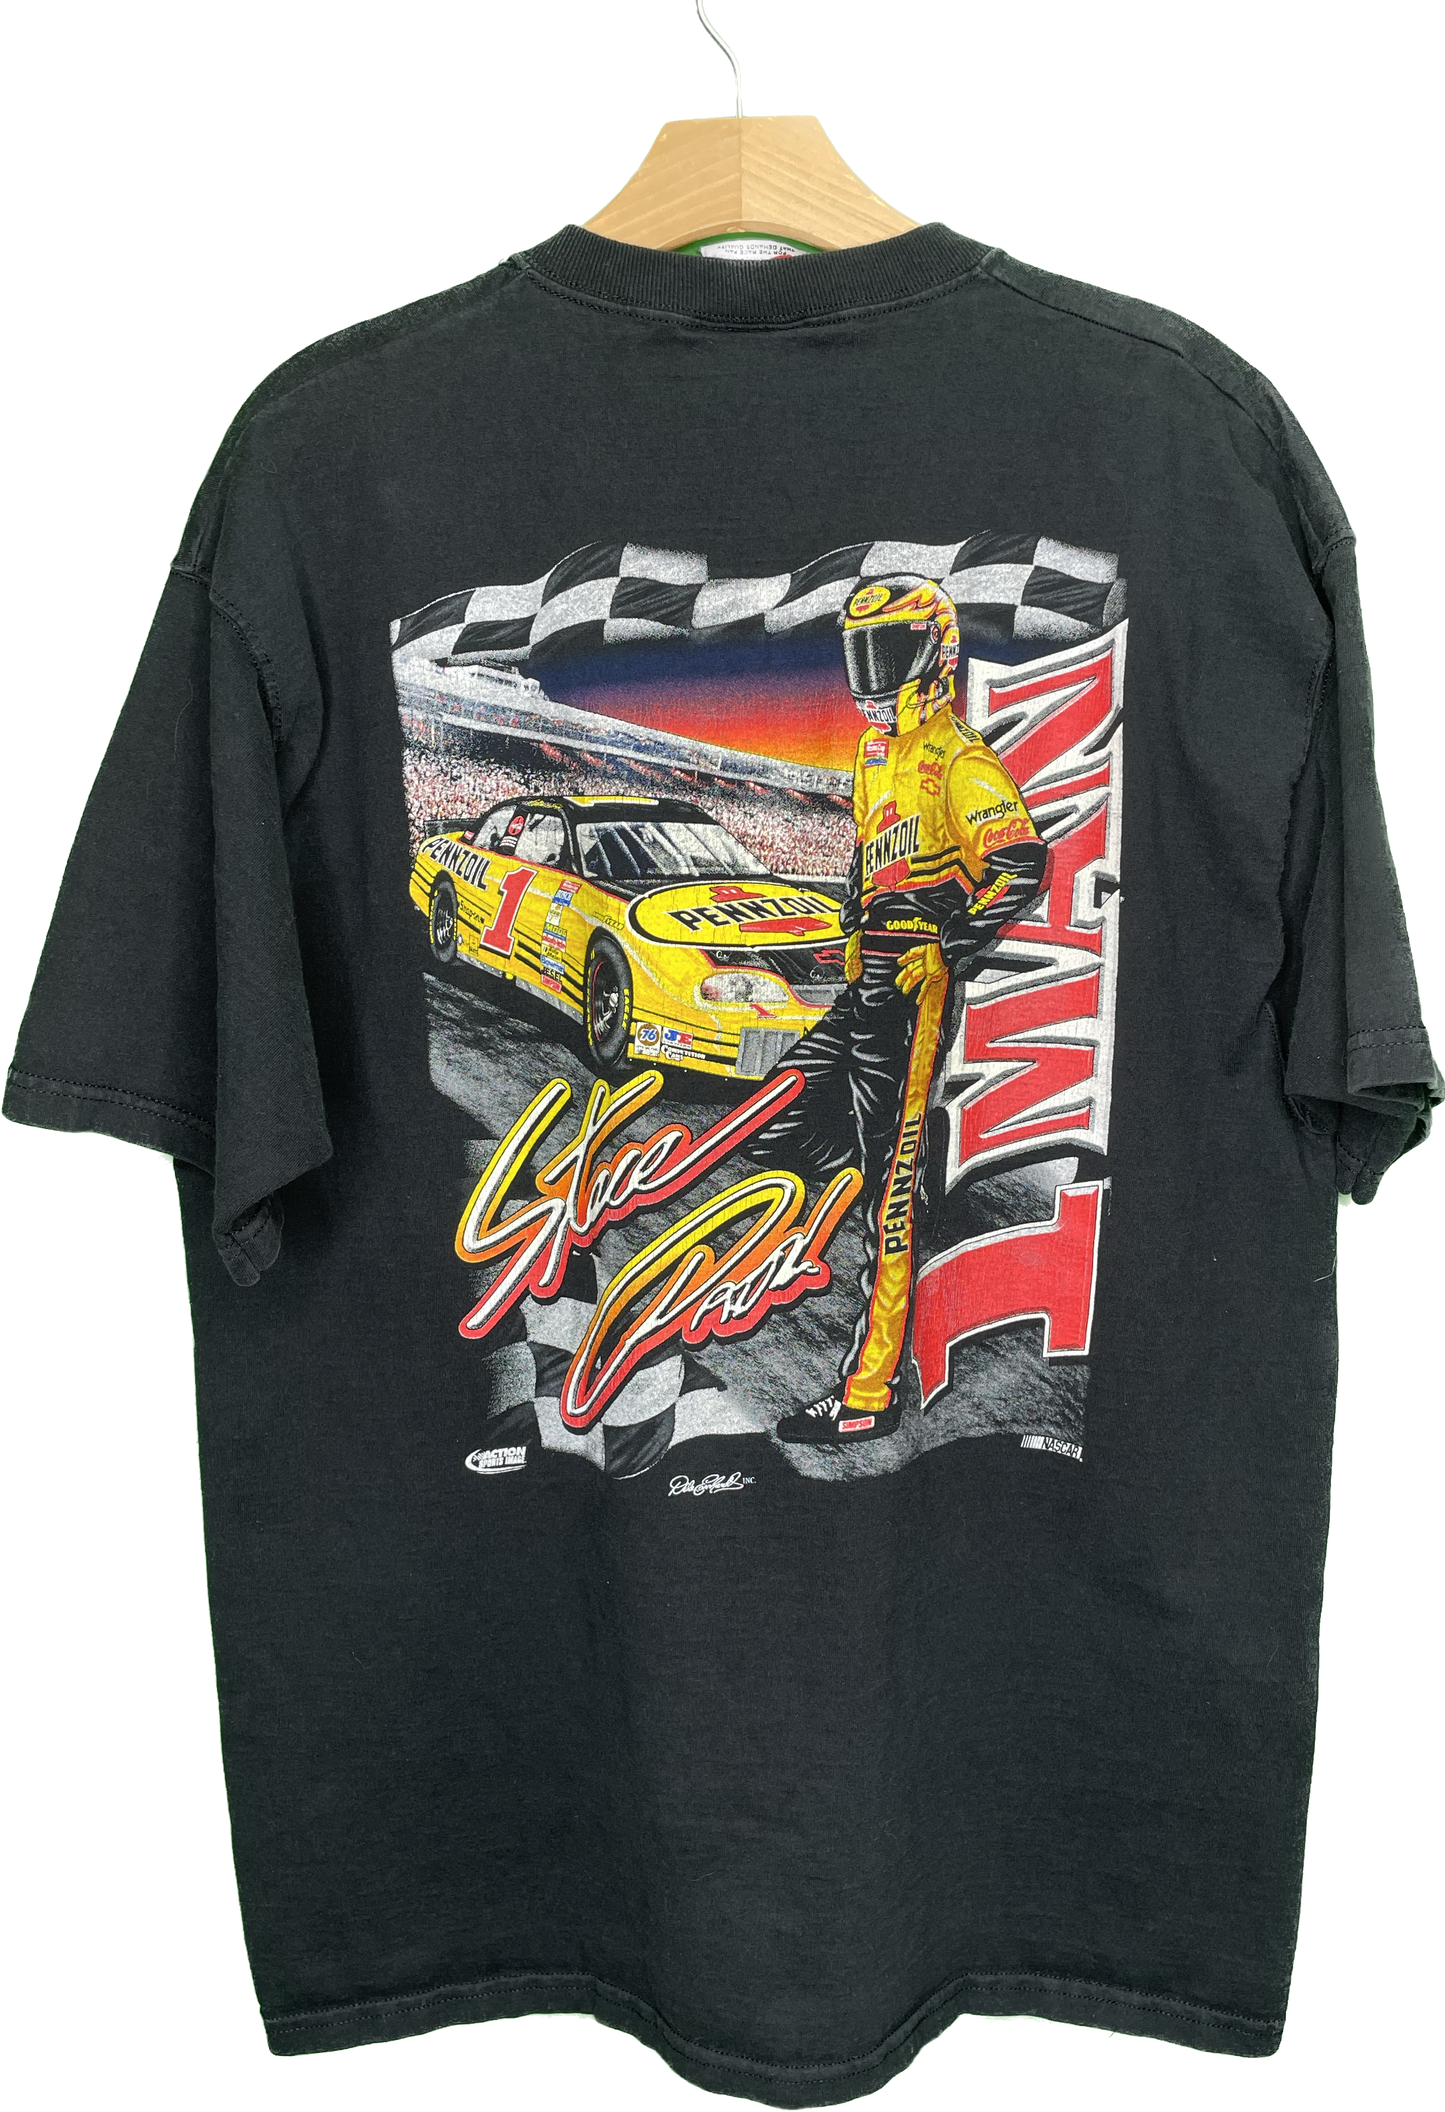 Vintage XL Steve Park 1 Man Machine Mission Pennzoil Nascar Racing T-Shirt